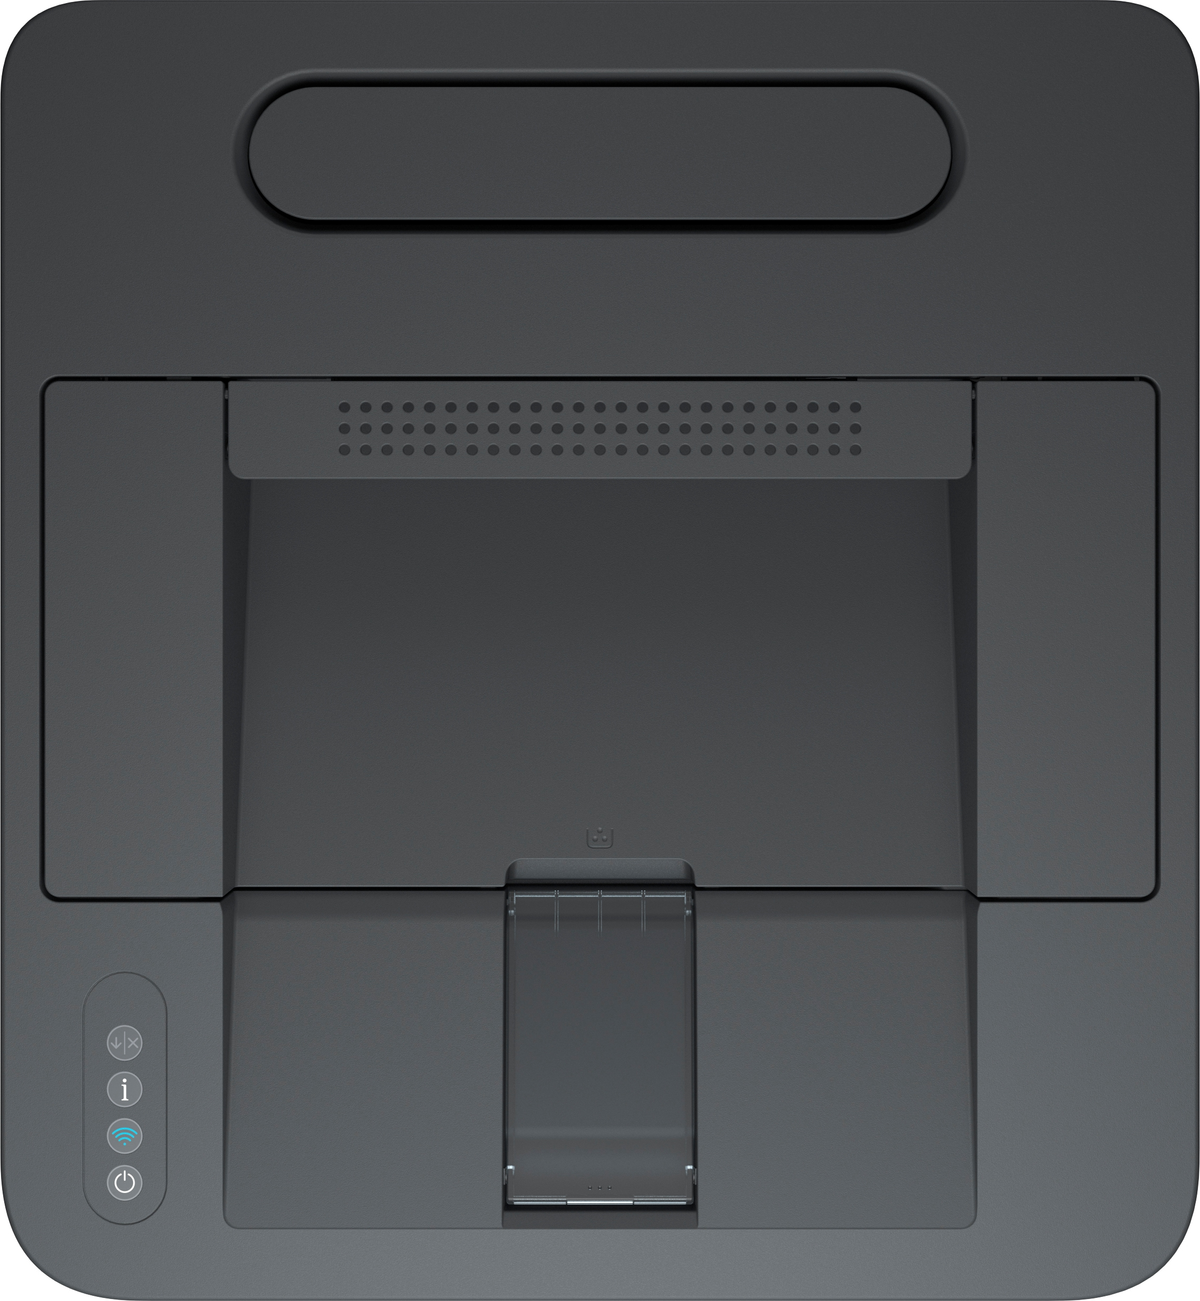 HP 3G652F Netzwerkfähig Laserdruck Drucker